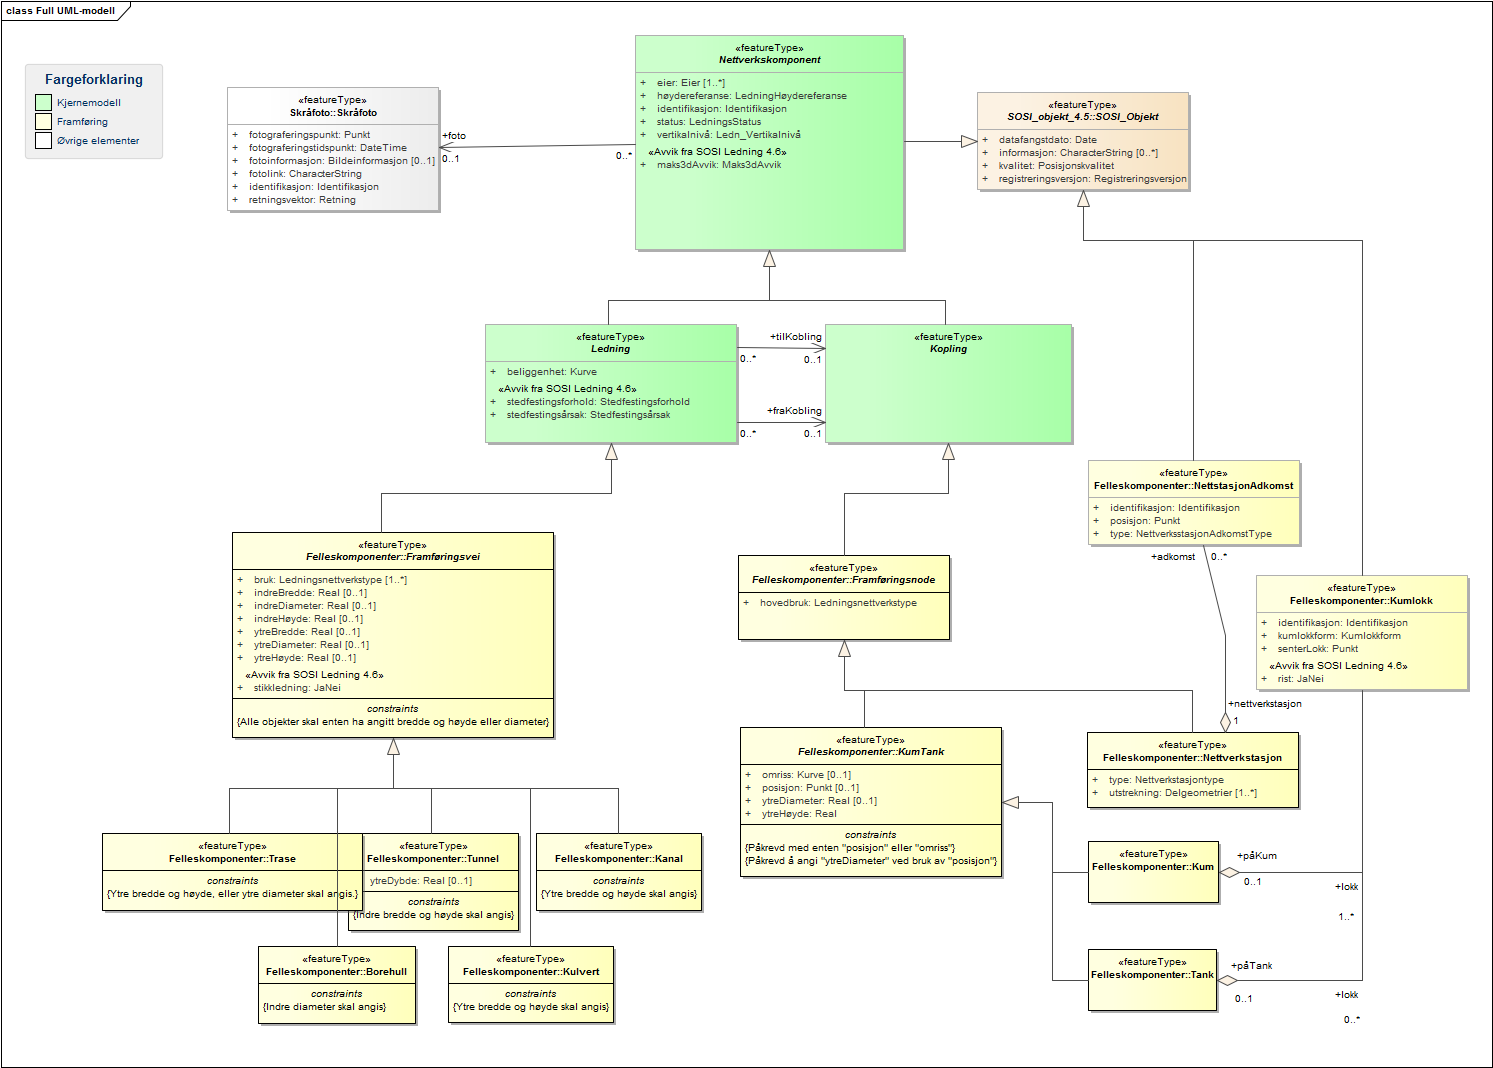 Full UML-modell